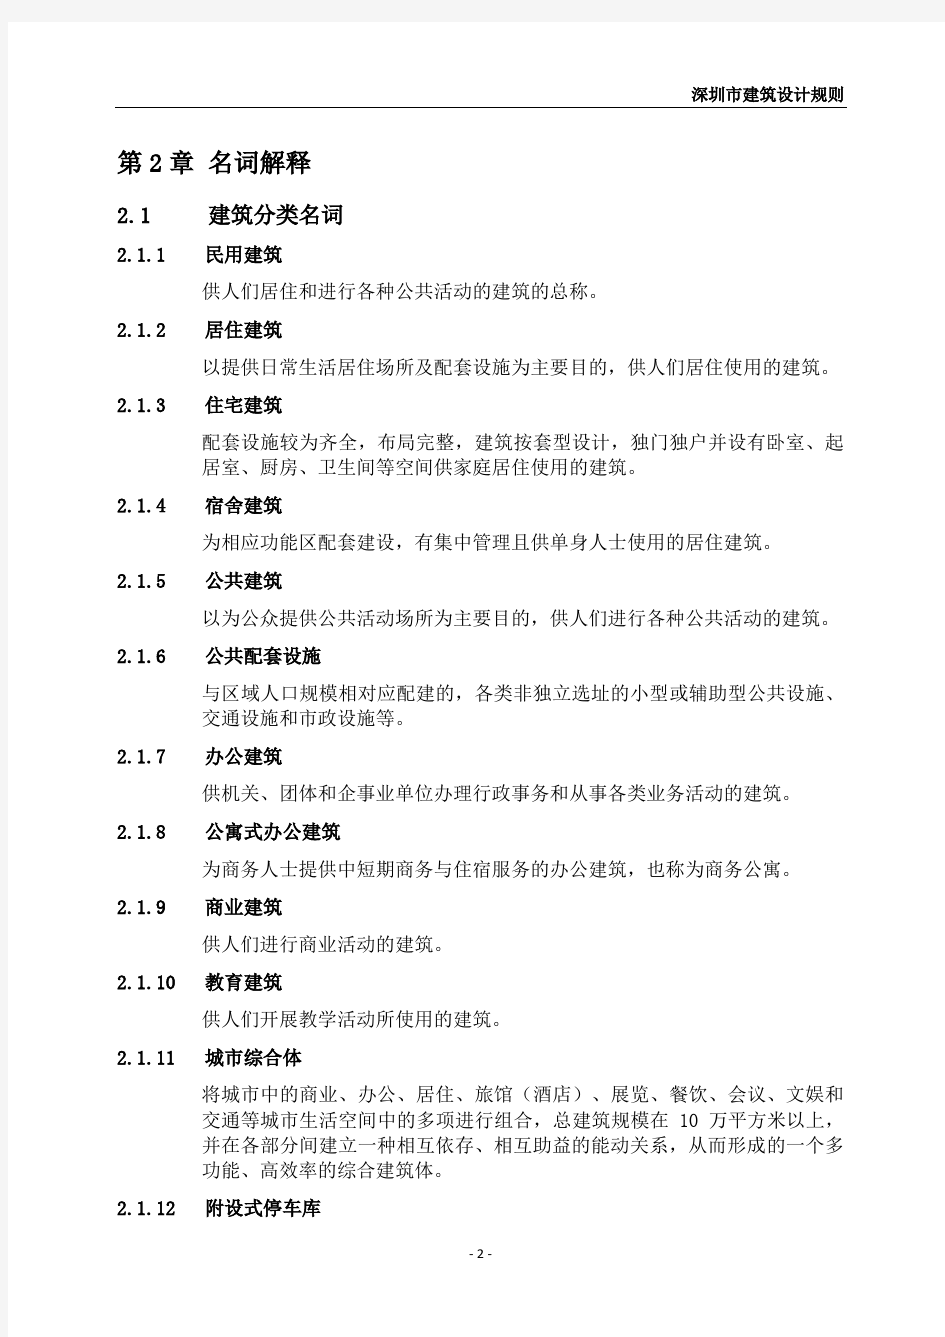 深圳市建筑设计规则-深规土〔2014〕402号-2014.8.1实行